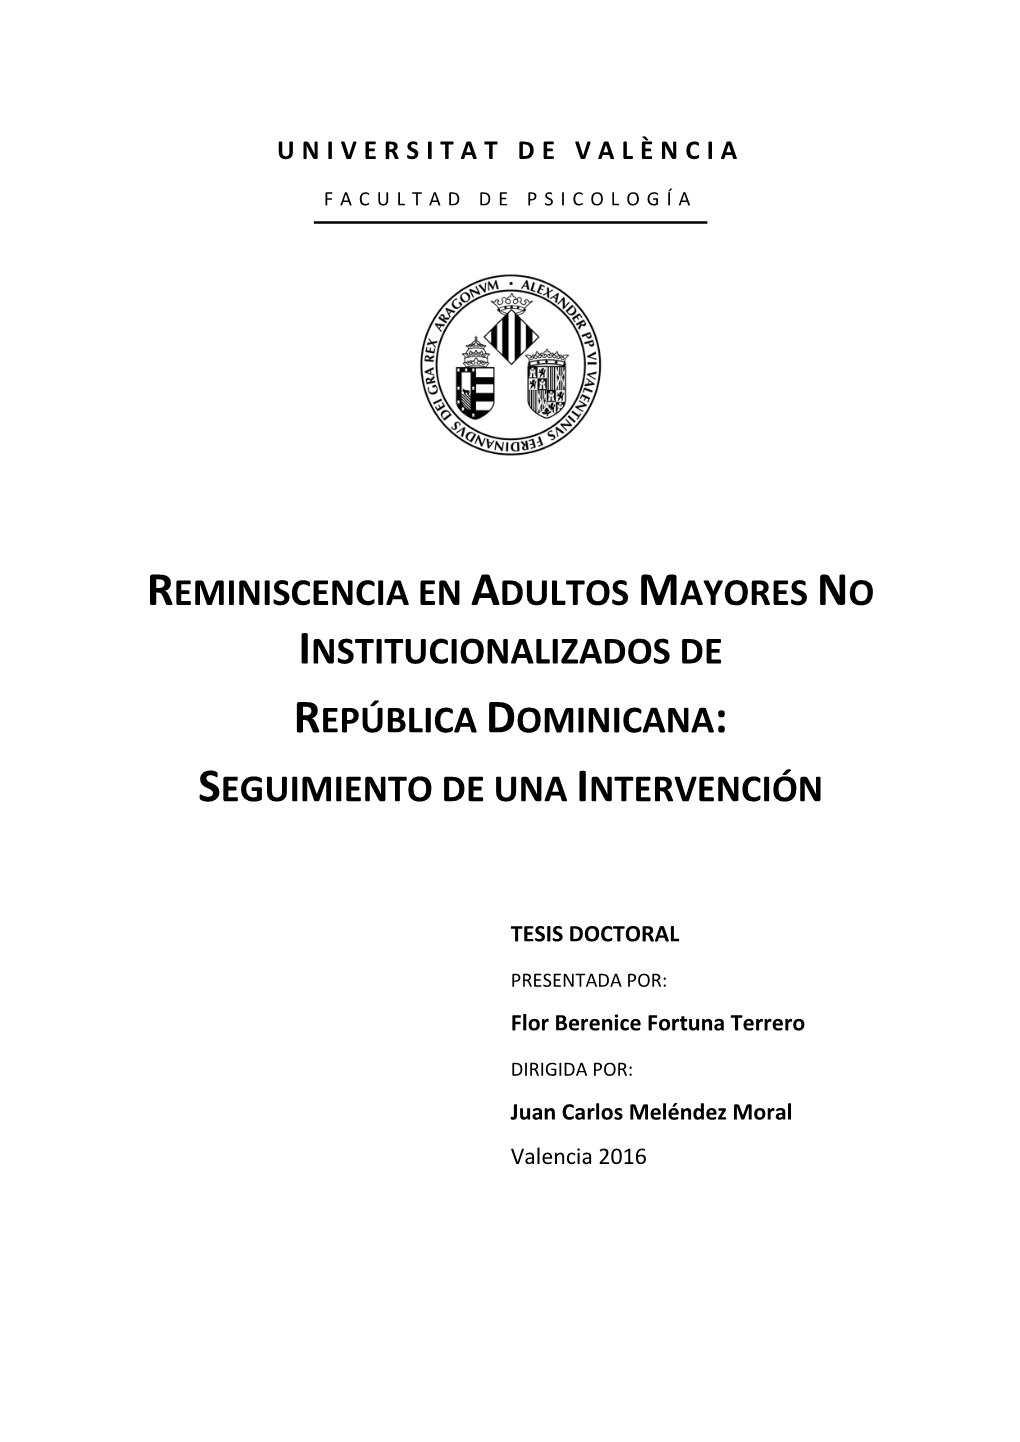 Reminiscencia En Adultos Mayores No Institucionalizados De República Dominicana